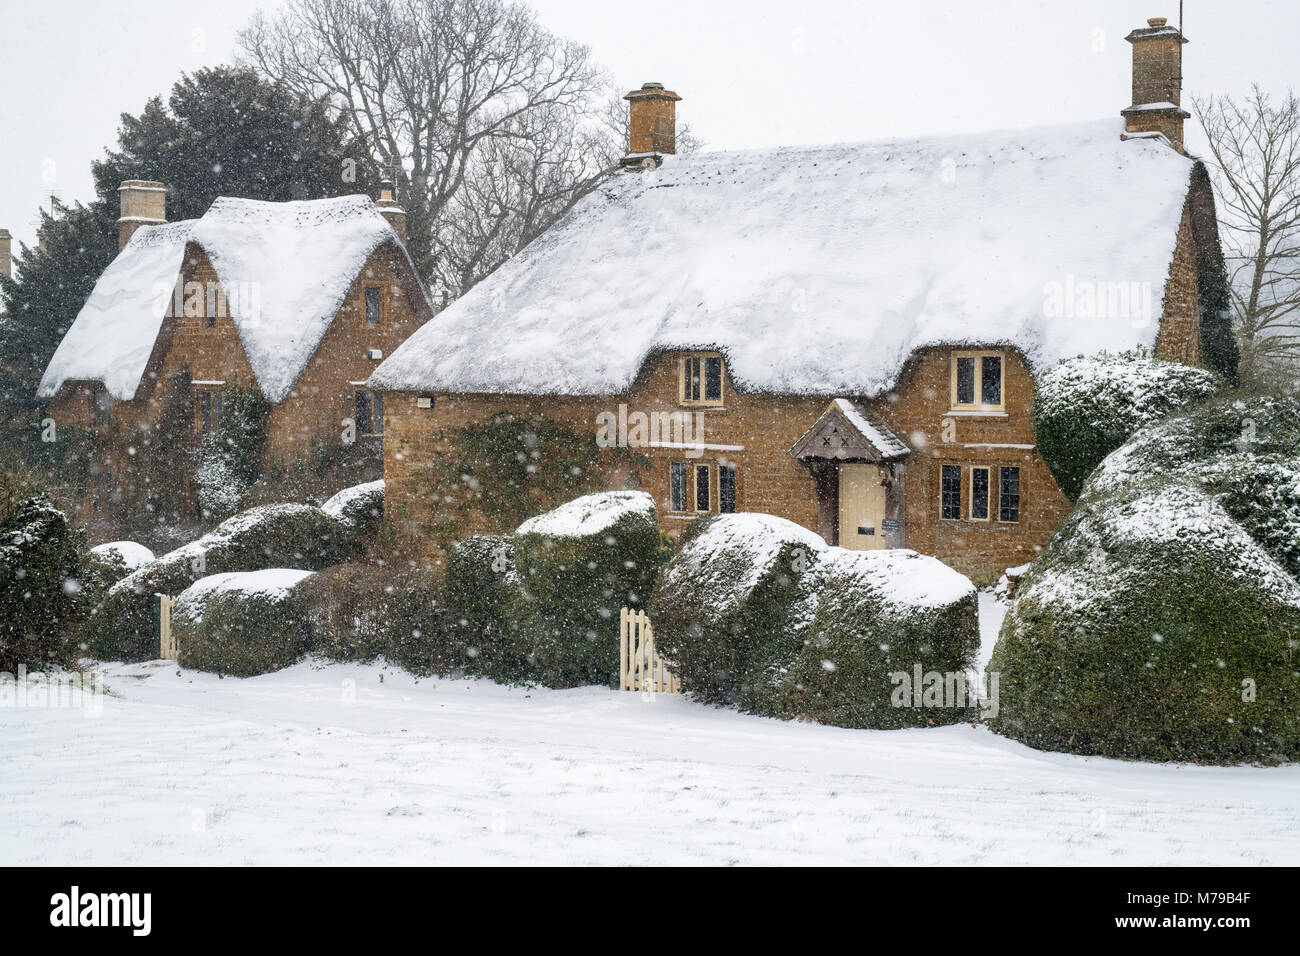 Thatched cottage en pierre dans la neige de l'hiver. Great Tew, Cotswolds, Oxfordshire, Angleterre Banque D'Images